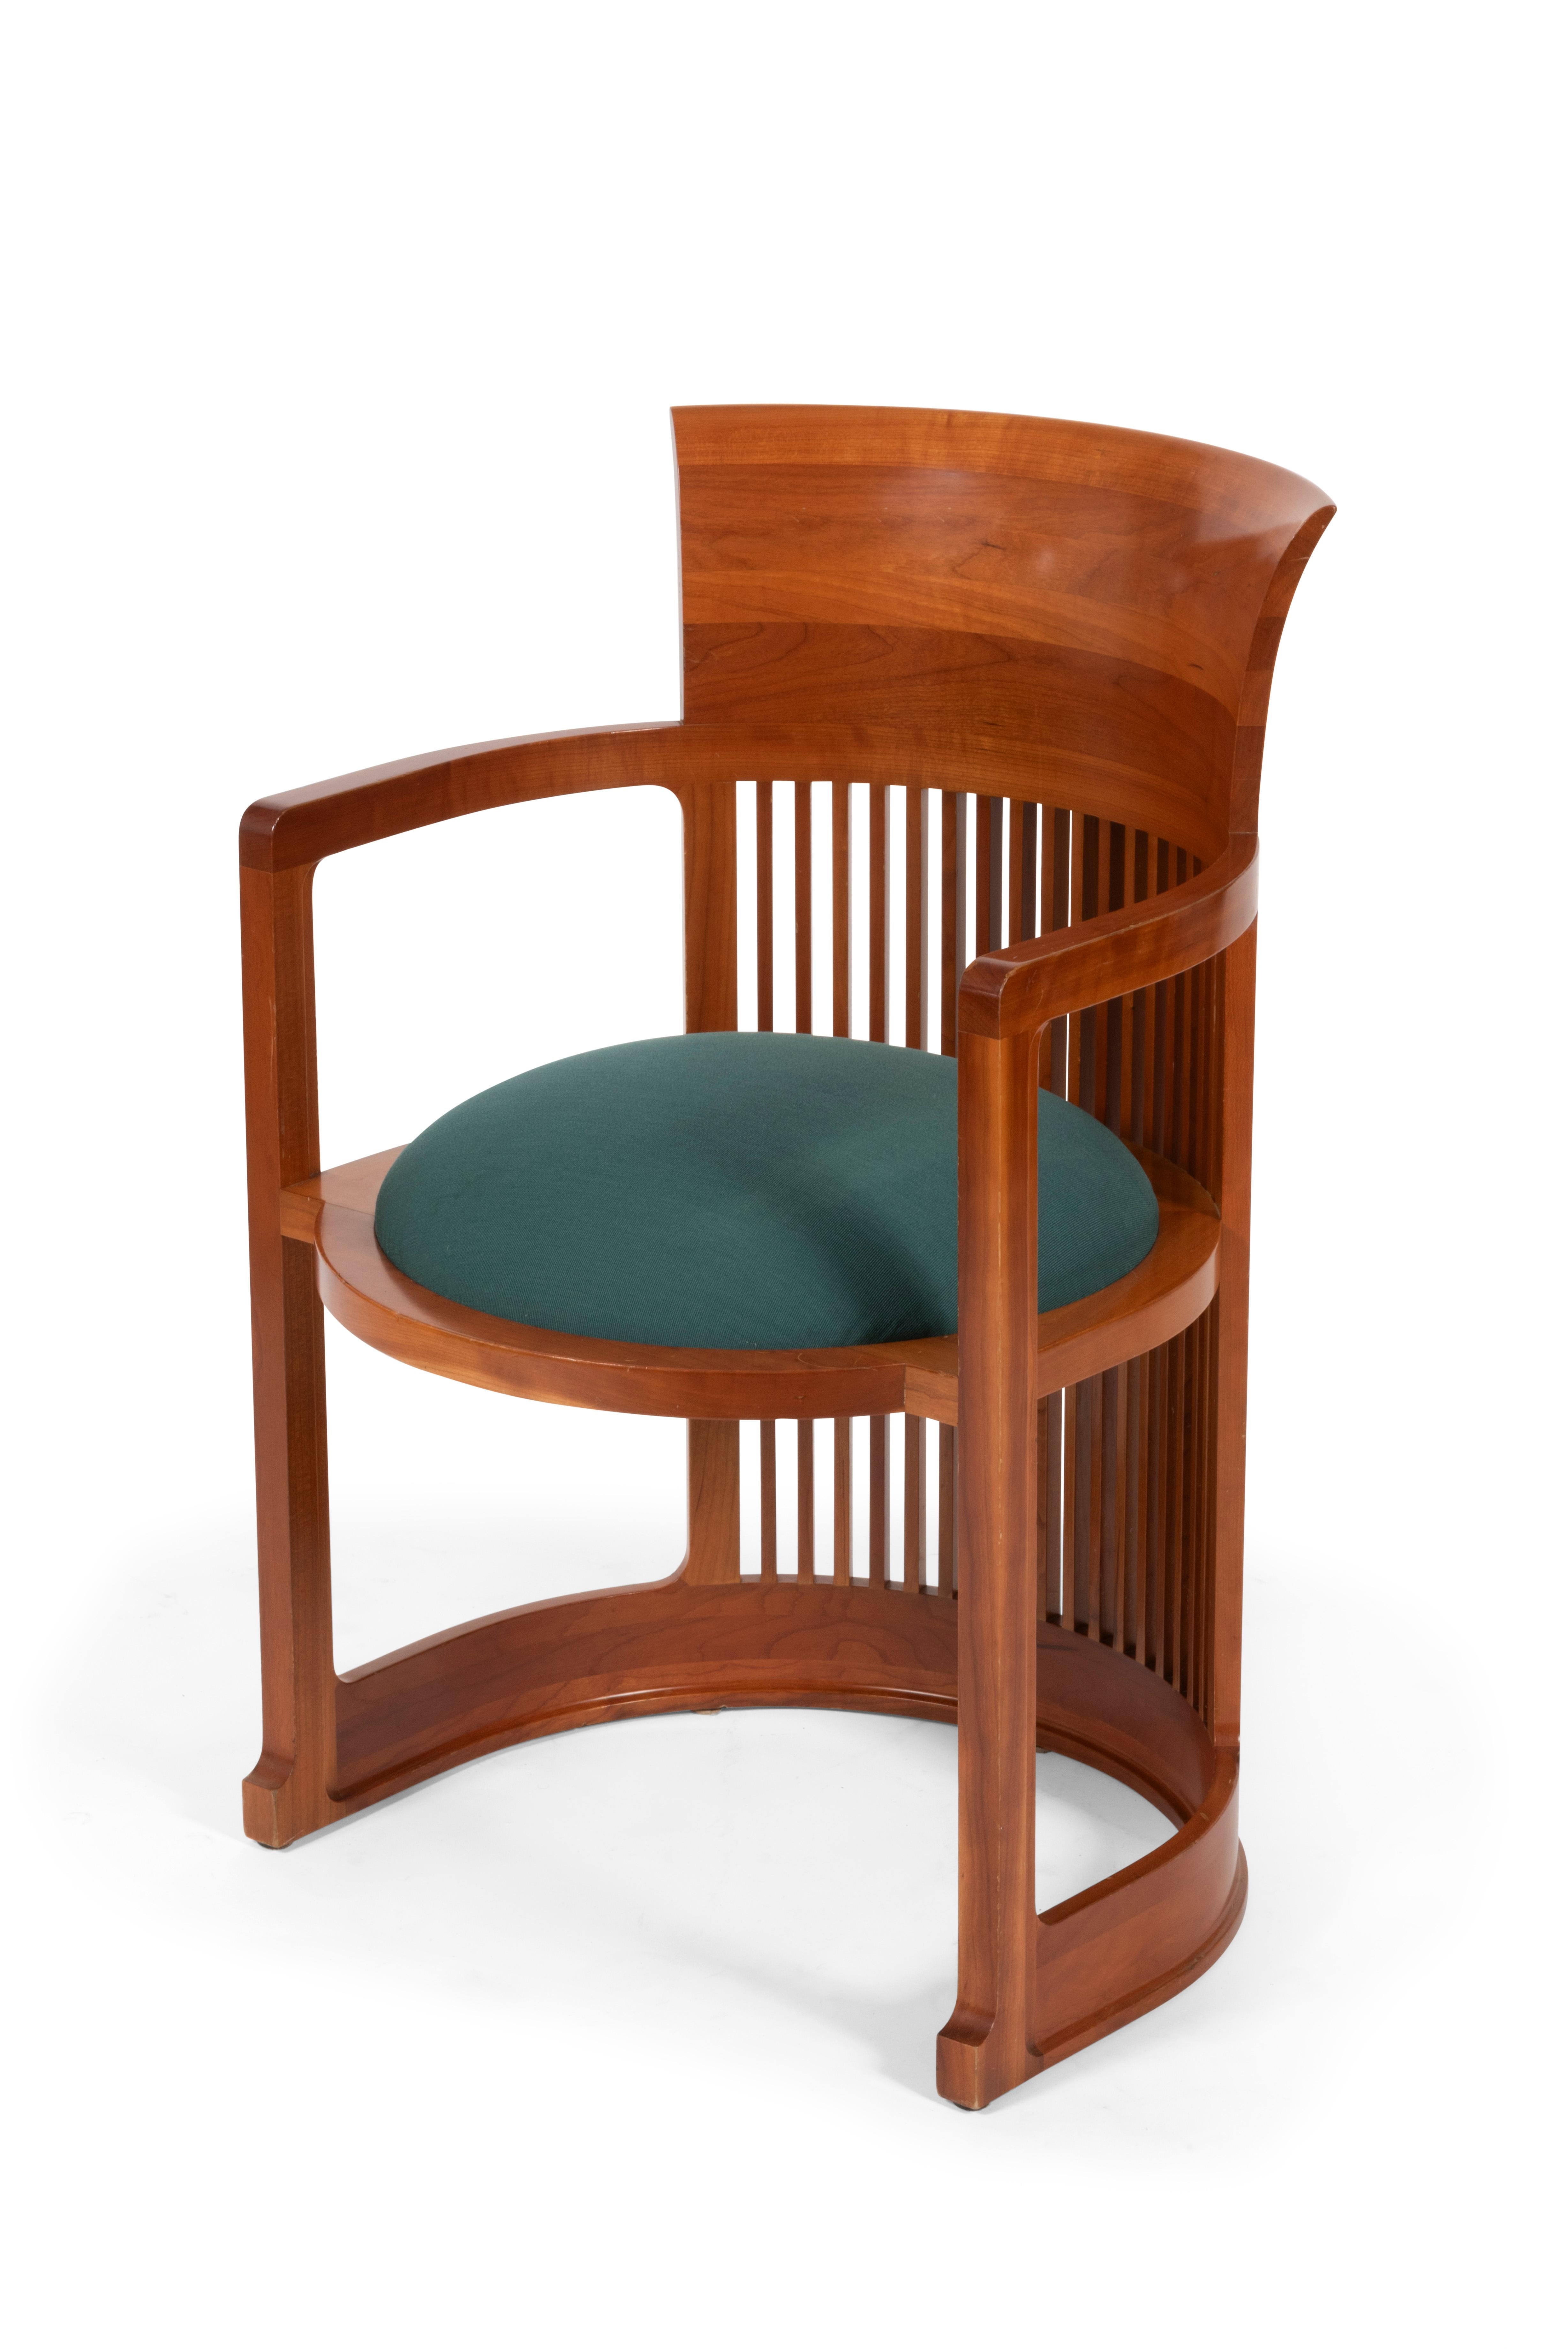 Cet incontournable fauteuil du mouvement Arts & Crafts du début du XXe siècle reprenant la forme d'un baril, est inventé par l'architecte Frank Lloyd Wright en 1904 et ensuite édité par Cassina dans les années 80.

La structure en bois de merisier